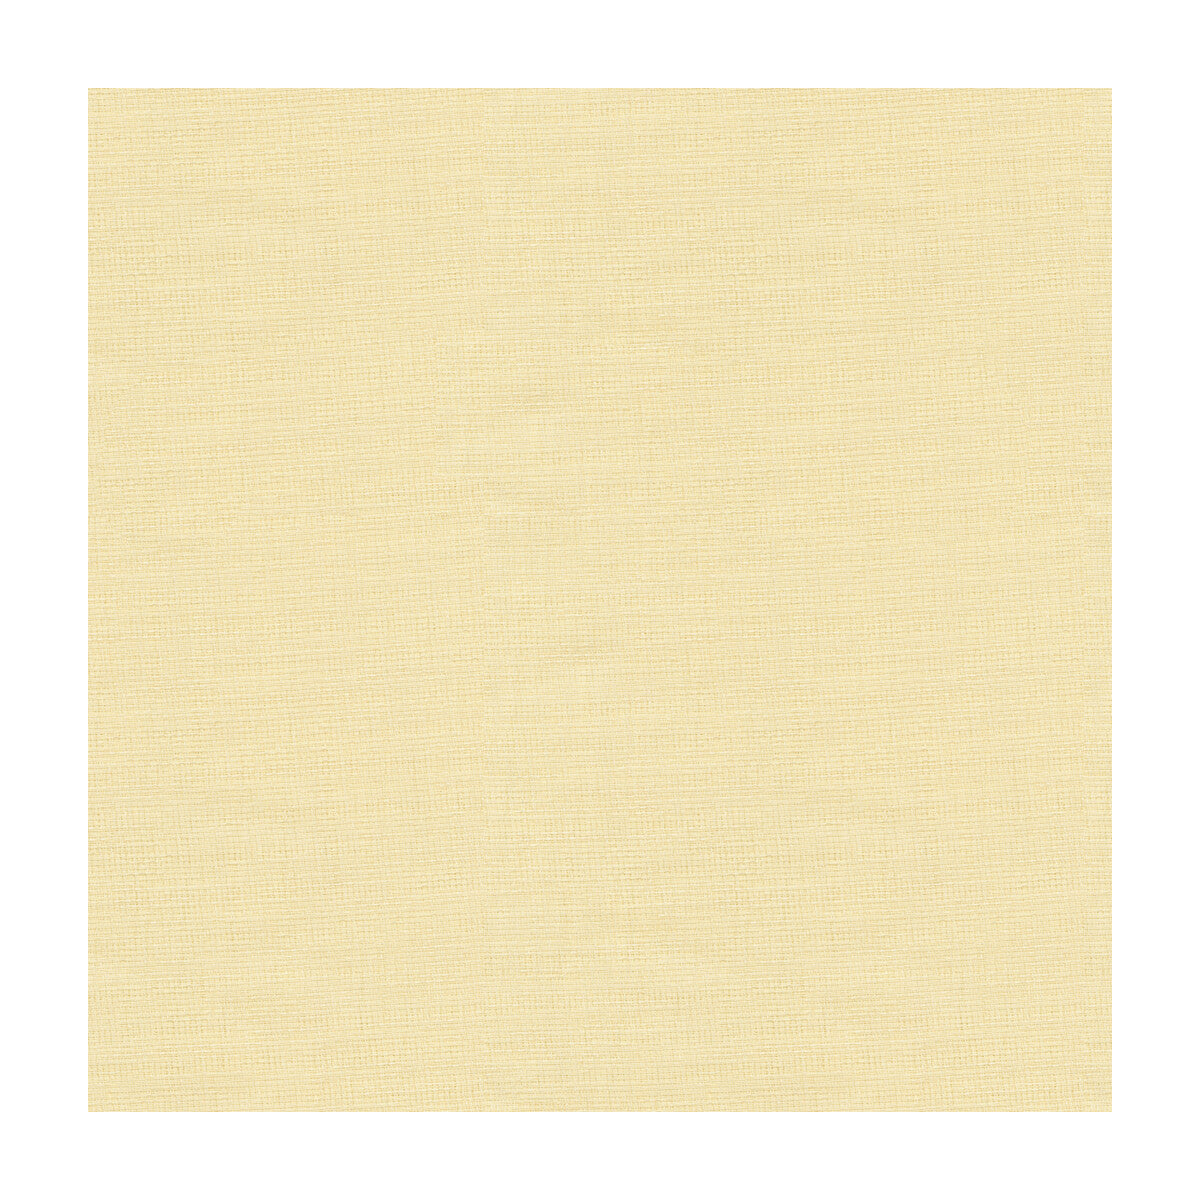 Kravet Basics fabric in 4125-1 color - pattern 4125.1.0 - by Kravet Basics